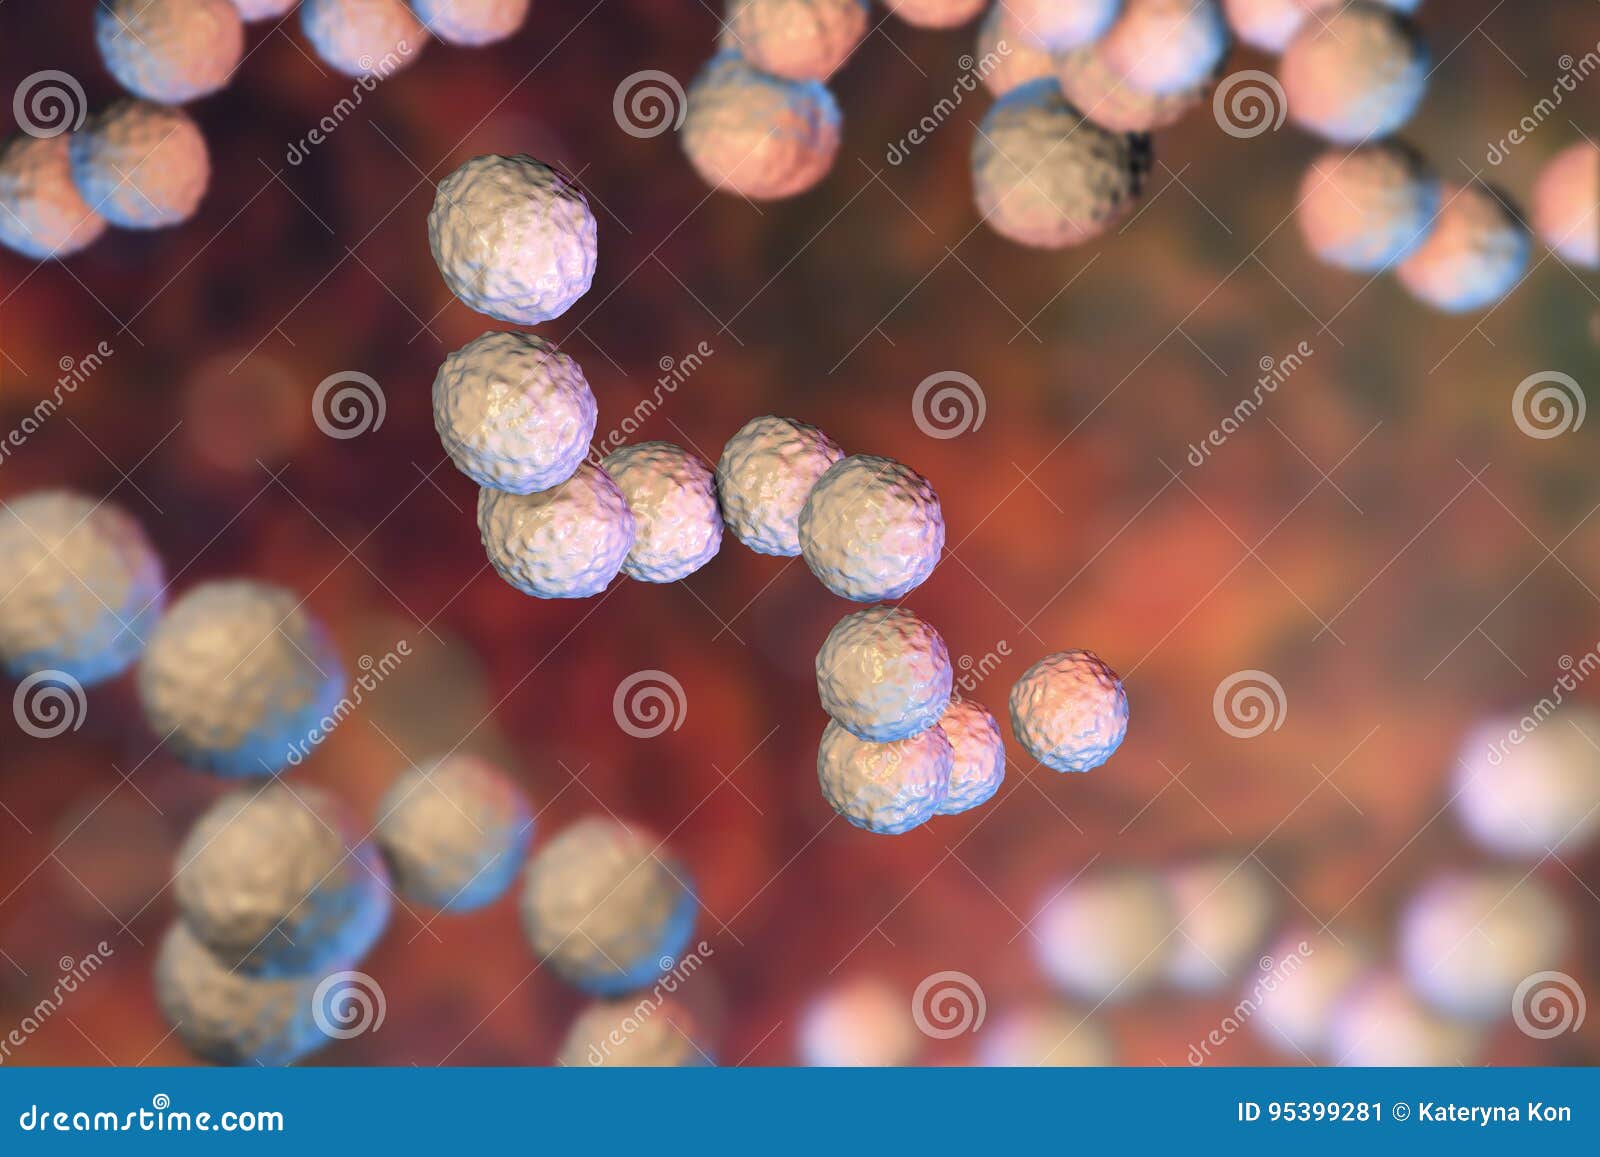 鼠疫杆菌革兰染色-图库-五毛网